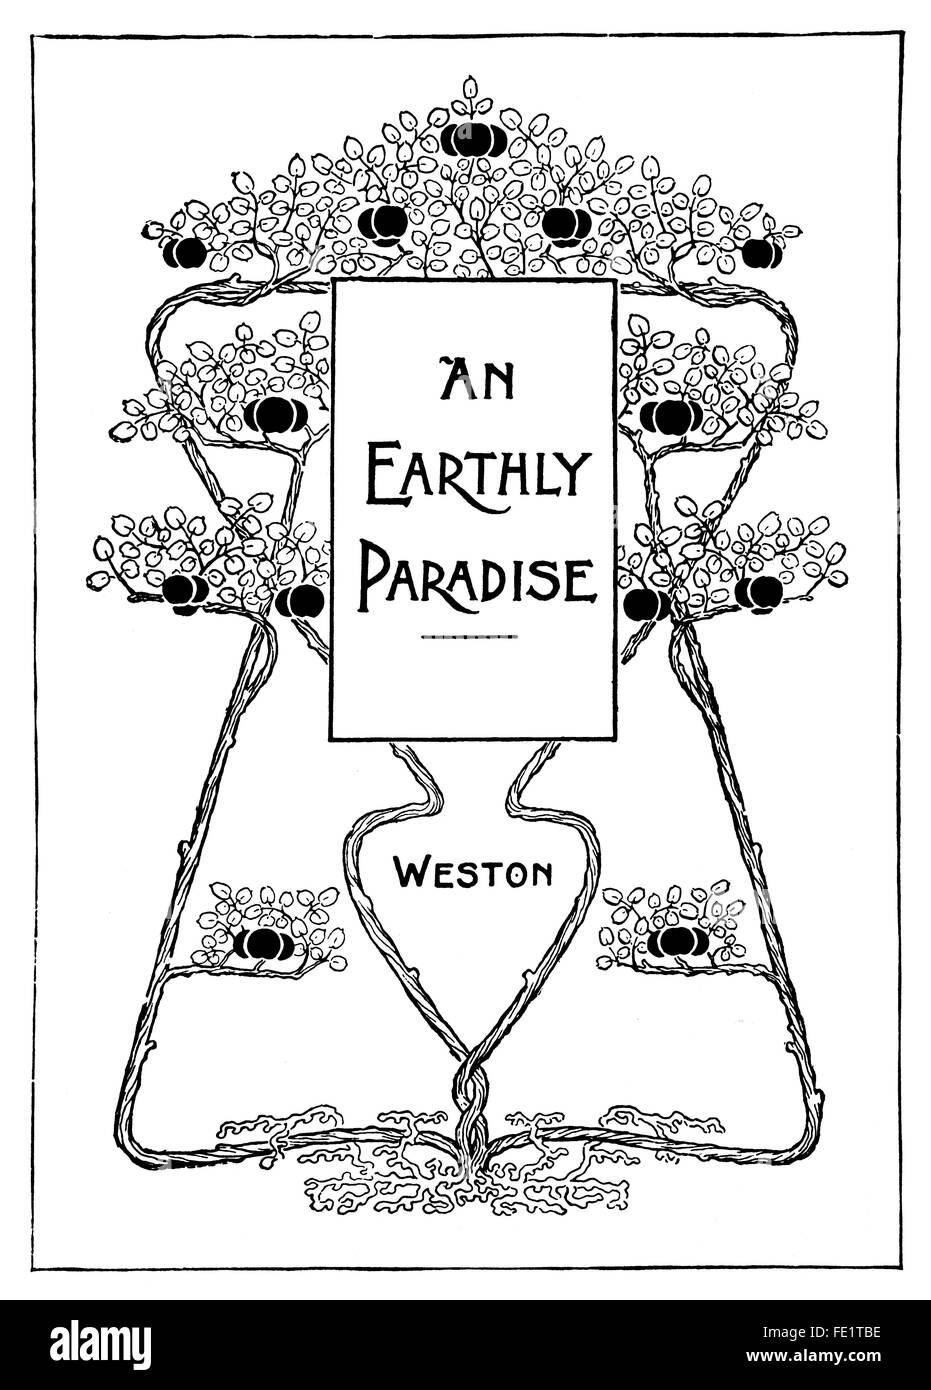 Un paradiso terrestre di Herbert ratiera di East Molesey, Design per un panno per la copertina del libro art nouveau illustrazione di linea dal 1897 Foto Stock